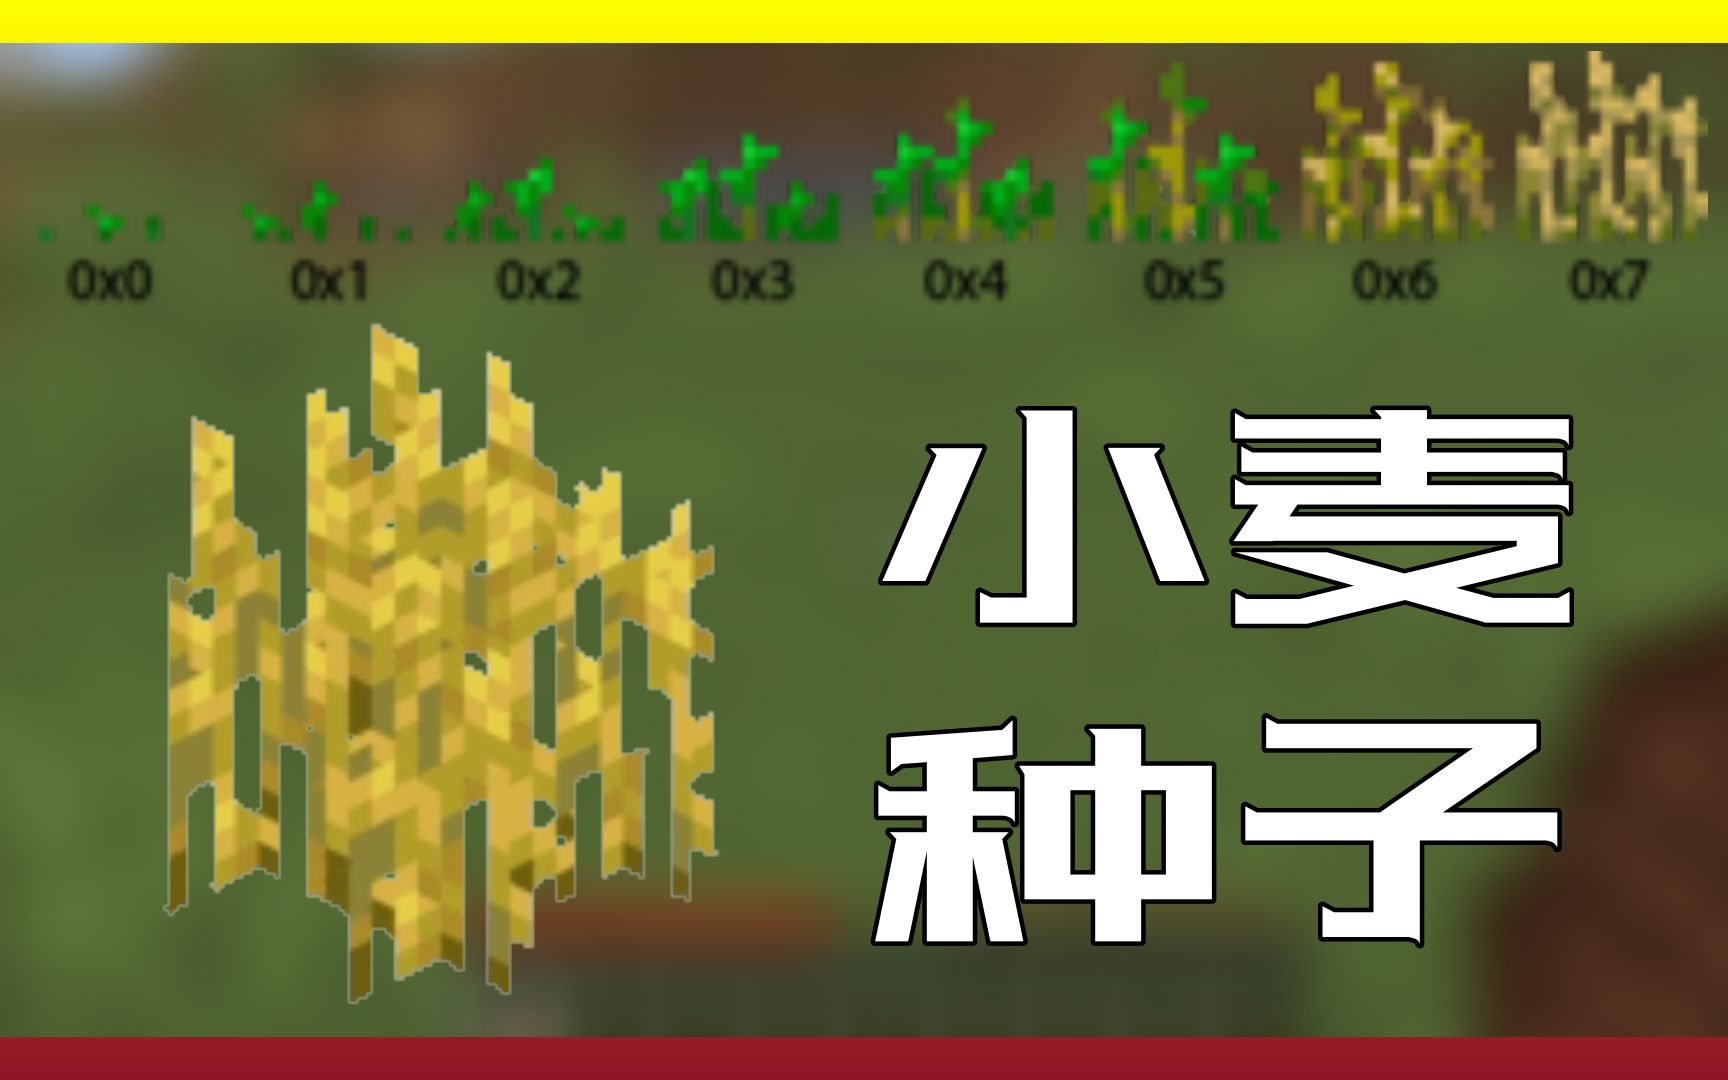 中文minecraft wiki视频征集稿件:小麦种子